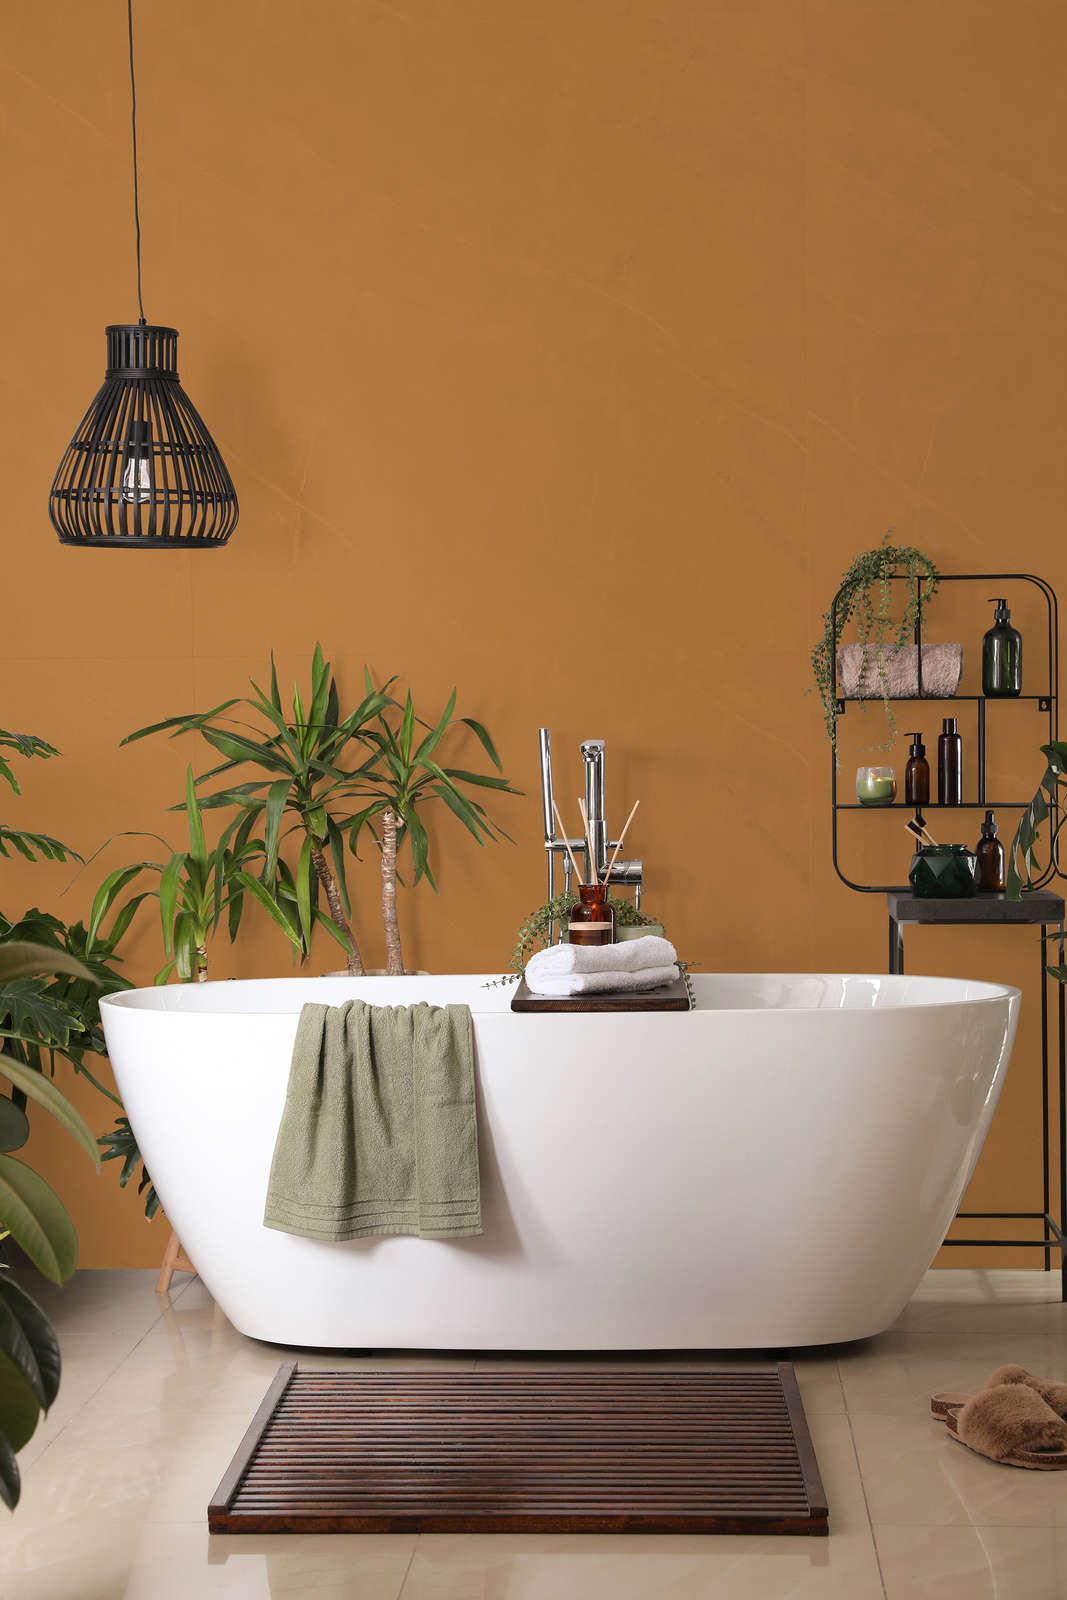             Pittura murale Premium marrone chiaro forte »Beige Orange/Sassy Saffron« NW814 – 1 litri
        